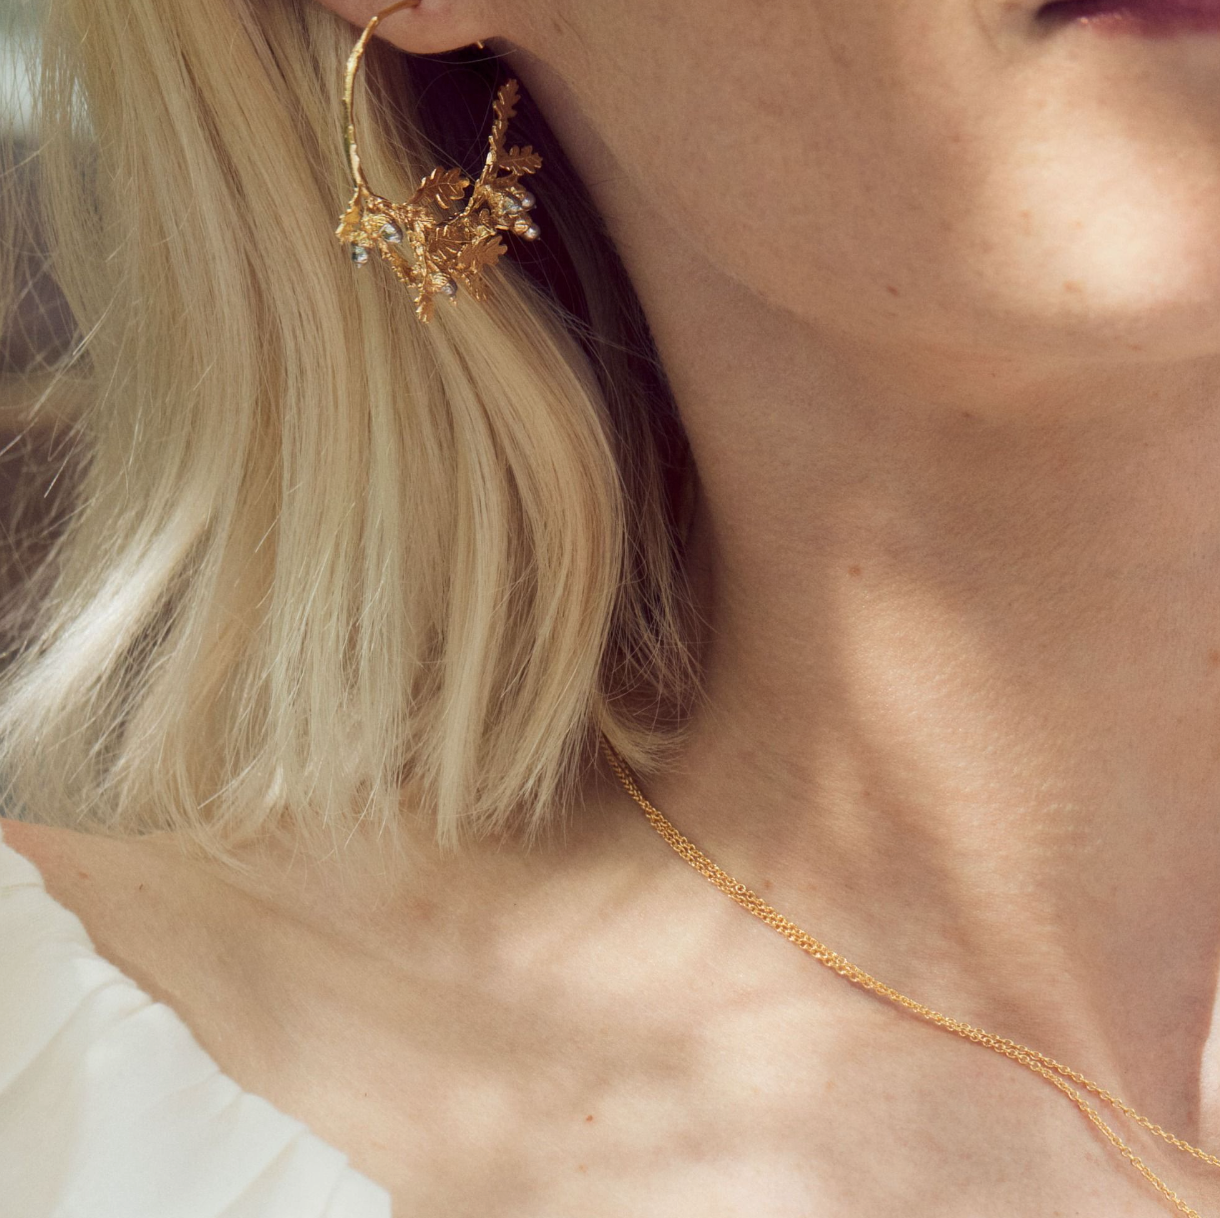 Oak Leaf & Acorn Hoop Earrings | Magpie Jewellery